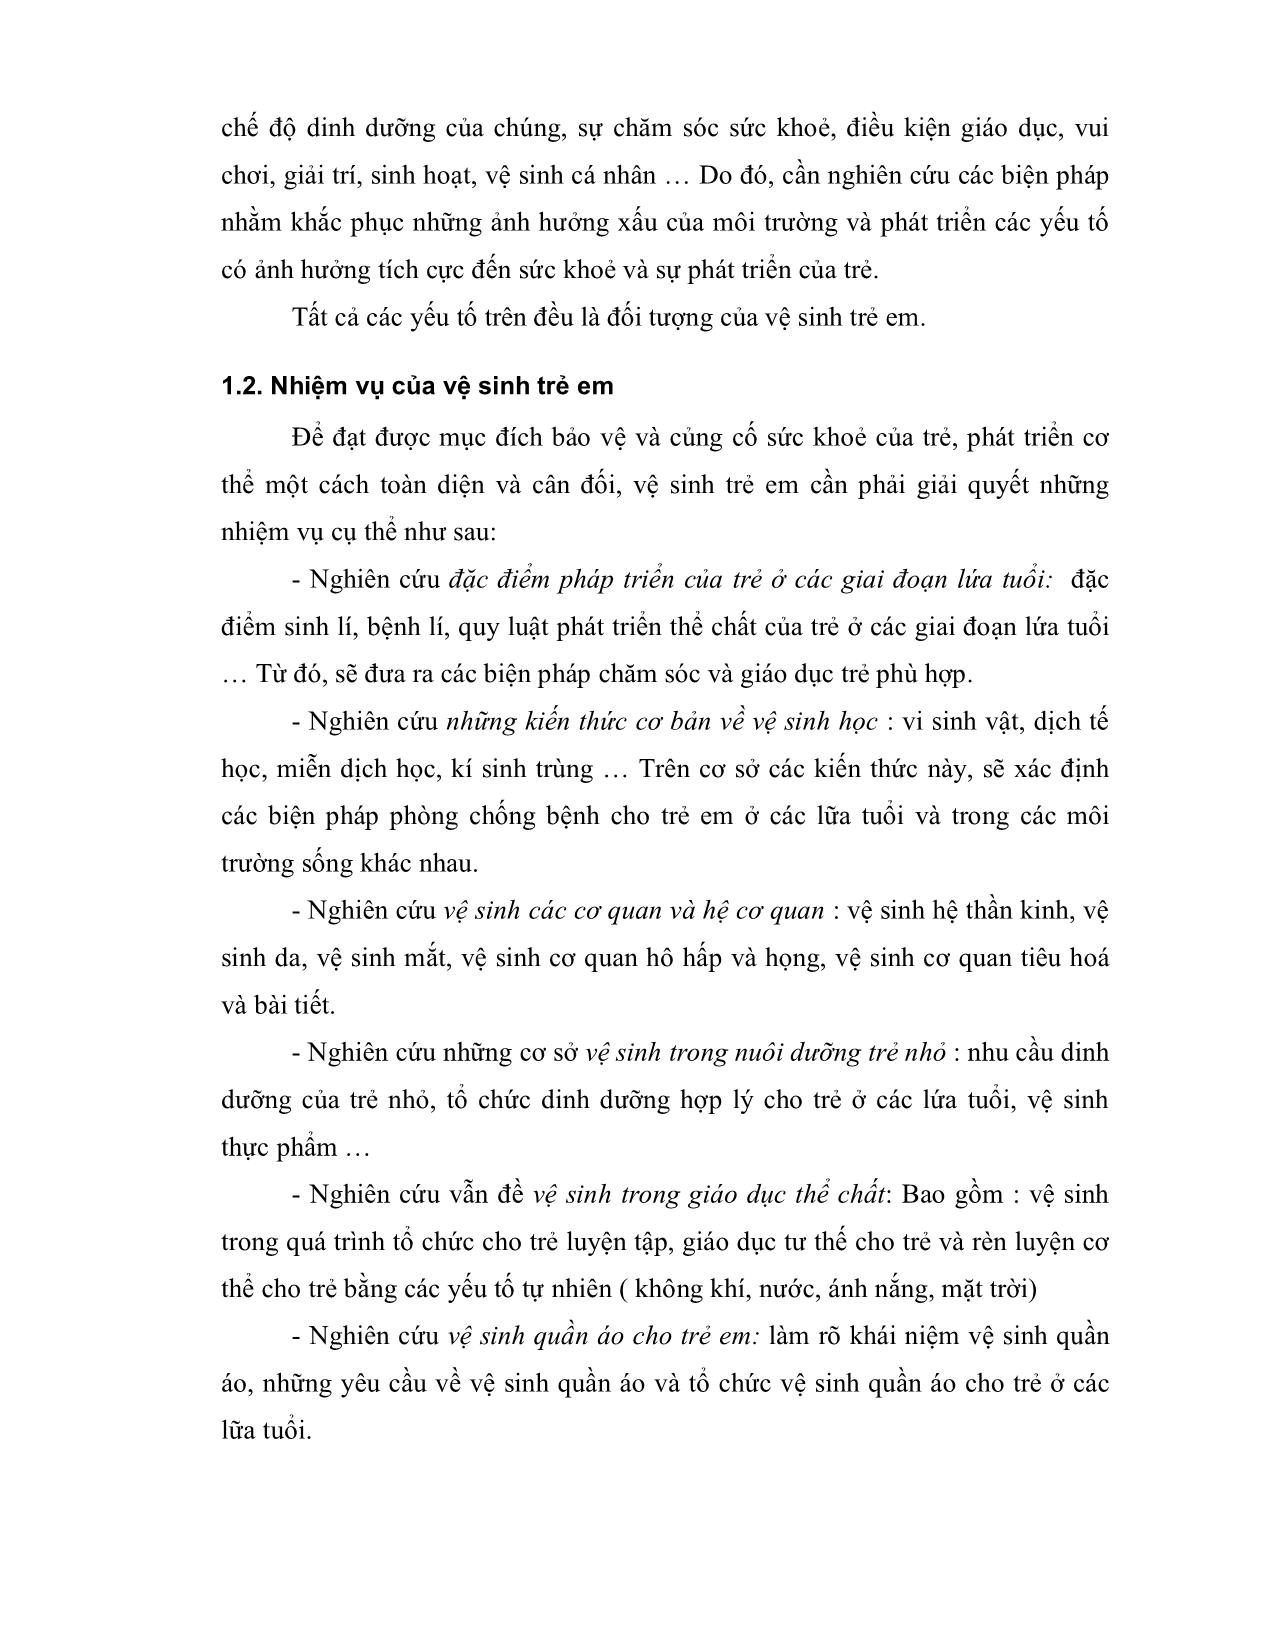 Giáo trình Bệnh học trẻ em (Phần 1) trang 4